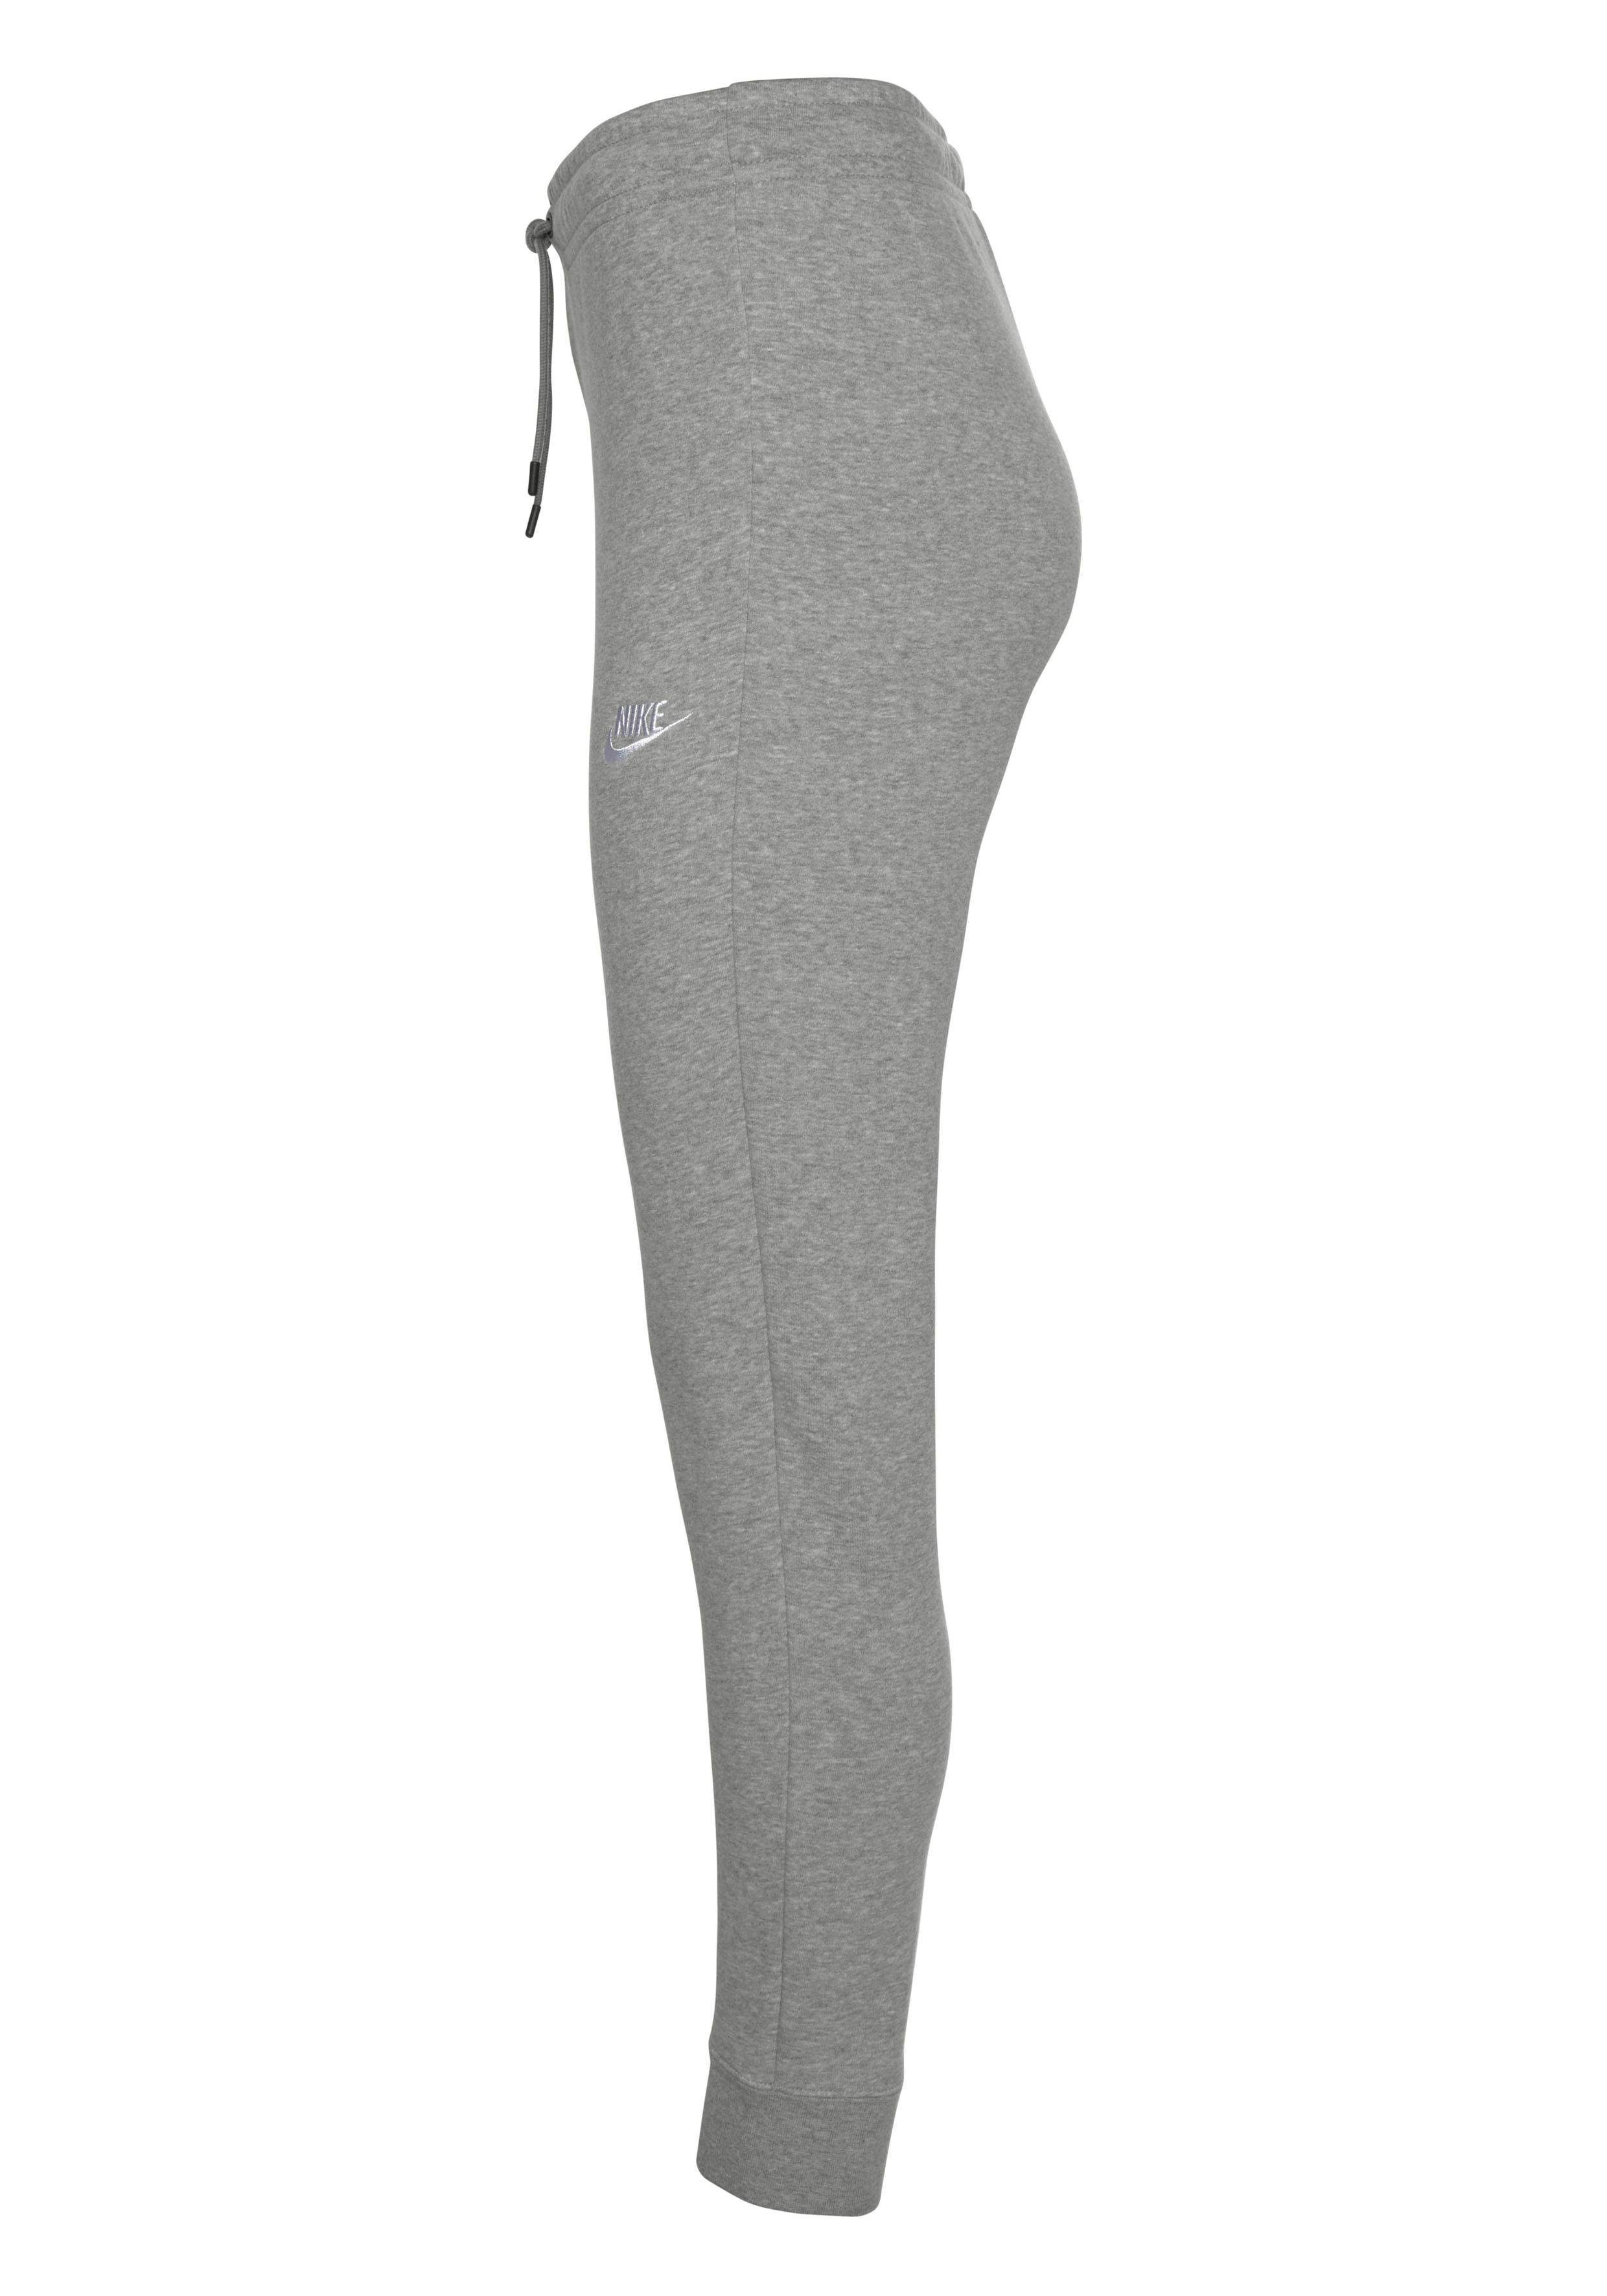 PANT WOMENS Sportswear Jogginghose Nike ESSENTIAL MID-RISE hellgrau-meliert FLEECE